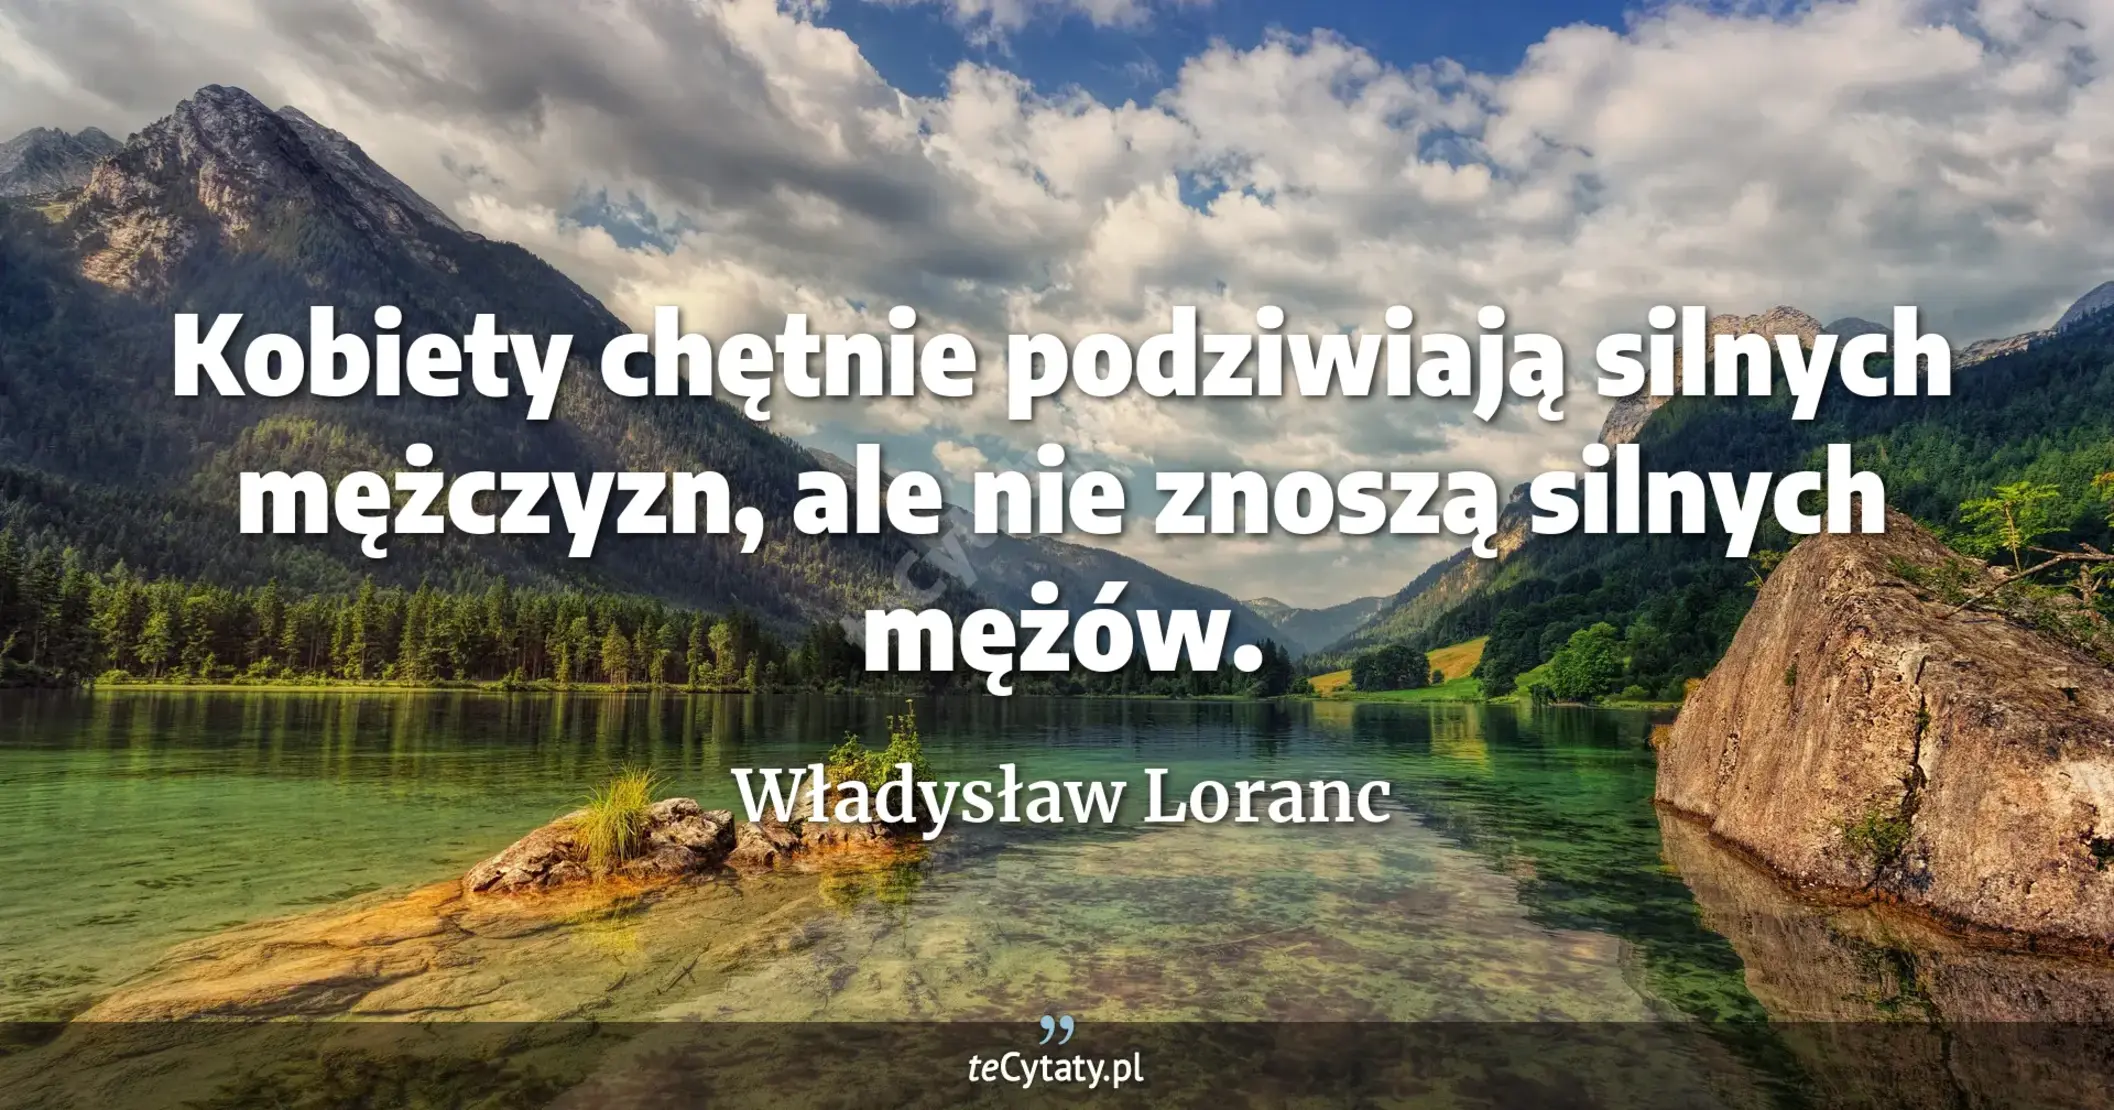 Kobiety chętnie podziwiają silnych mężczyzn, ale nie znoszą silnych mężów. - Władysław Loranc